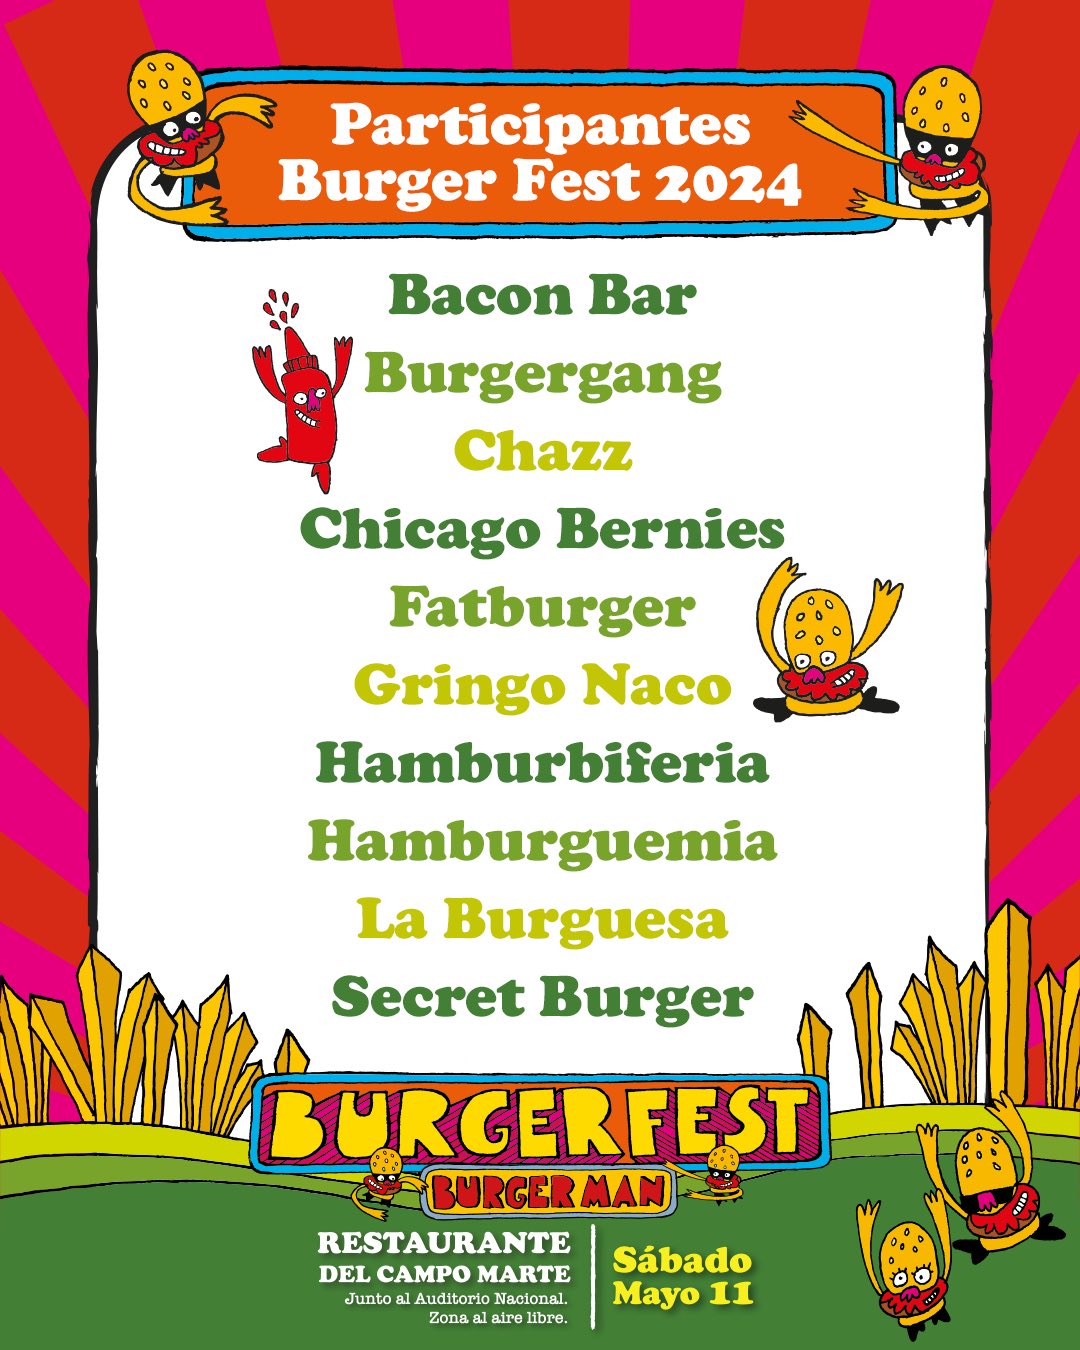 Burger Fest 2024 tendrá más de 30 restaurantes presentes 2